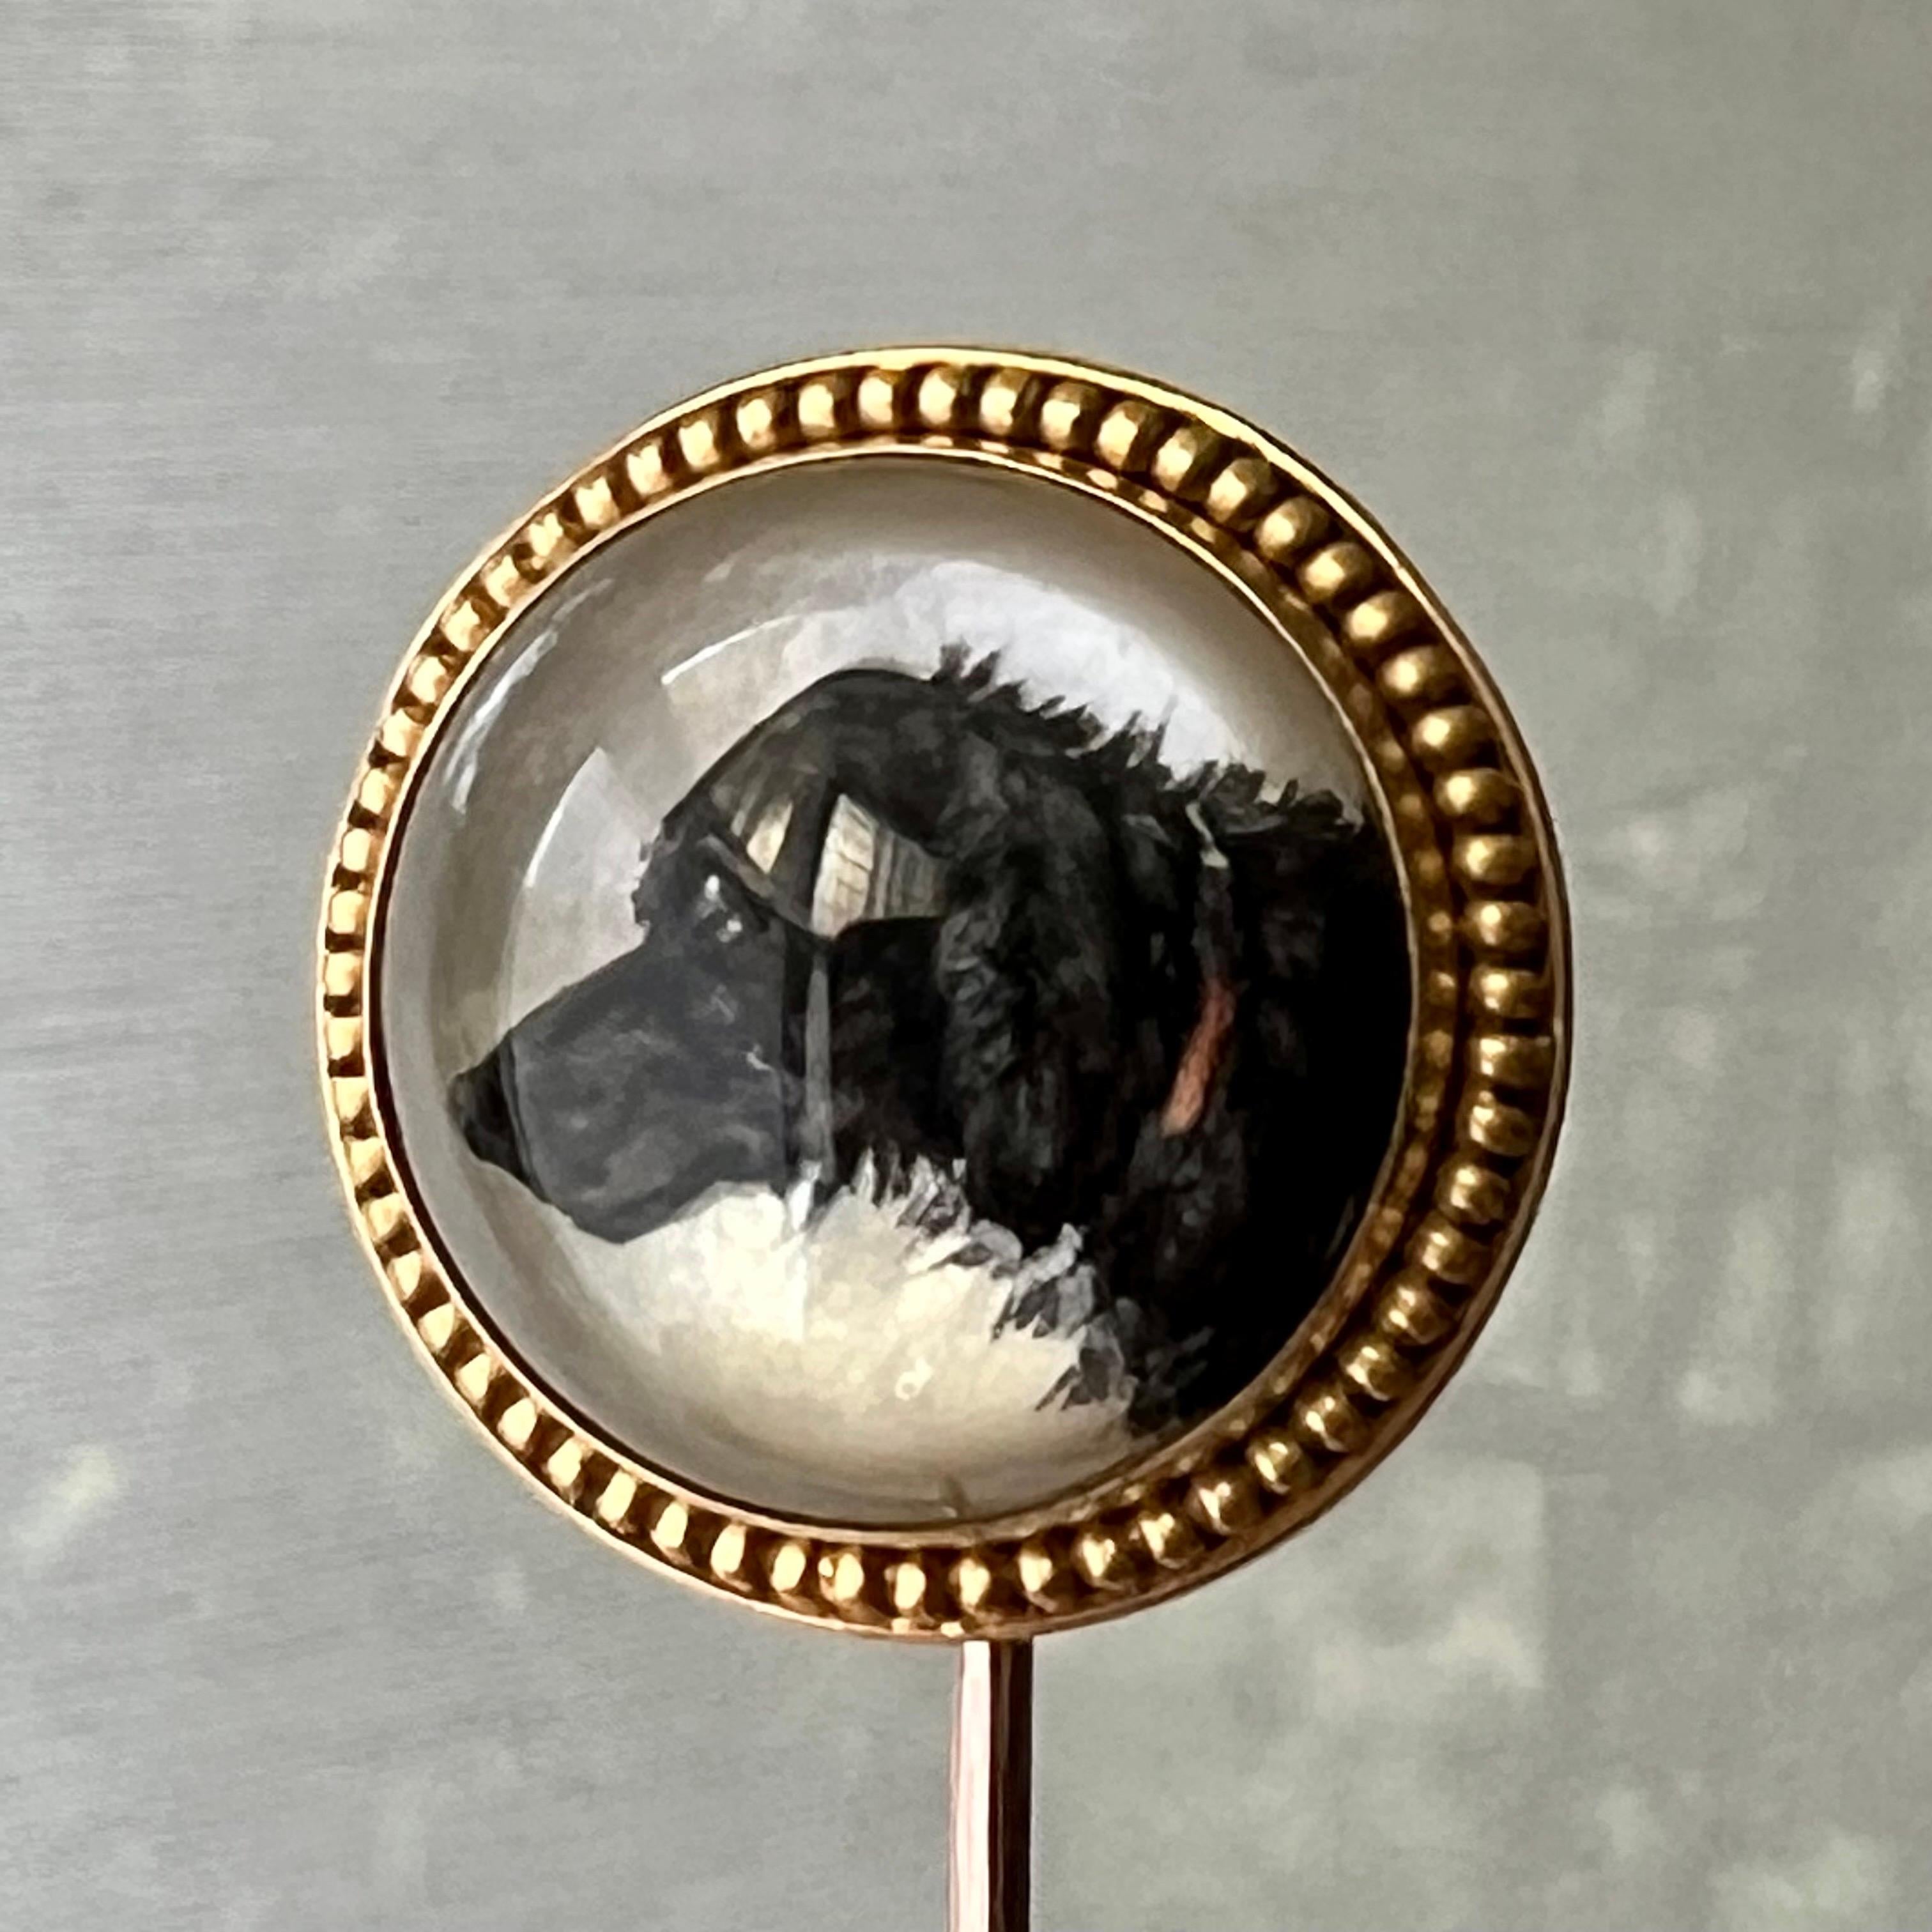 Eine antike Stichtiefdruck-Kristall-Anstecknadel, die einen Jagdhund abbildet. Das Hundebild wurde auf einem rückseitig geschliffenen Kristall gemalt und hat einen Hintergrund aus Perlmutt. Das Hundekristallbild ist in eine granulierte 14-karätige